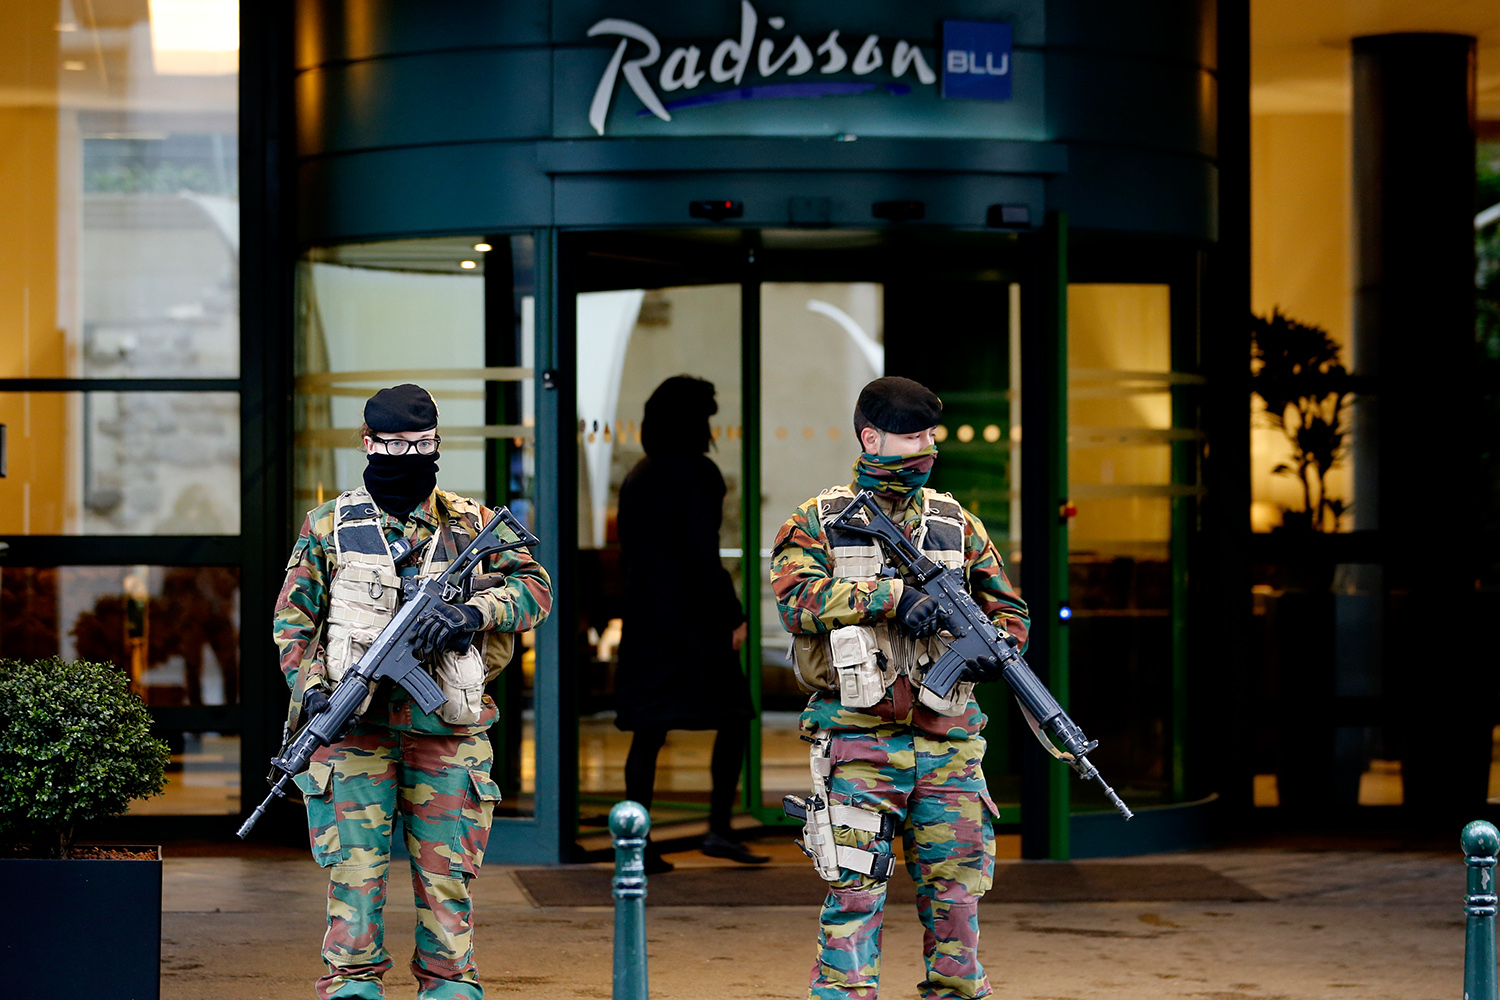 La ocupación hotelera en Bruselas se reduce a la mitad desde los atentados